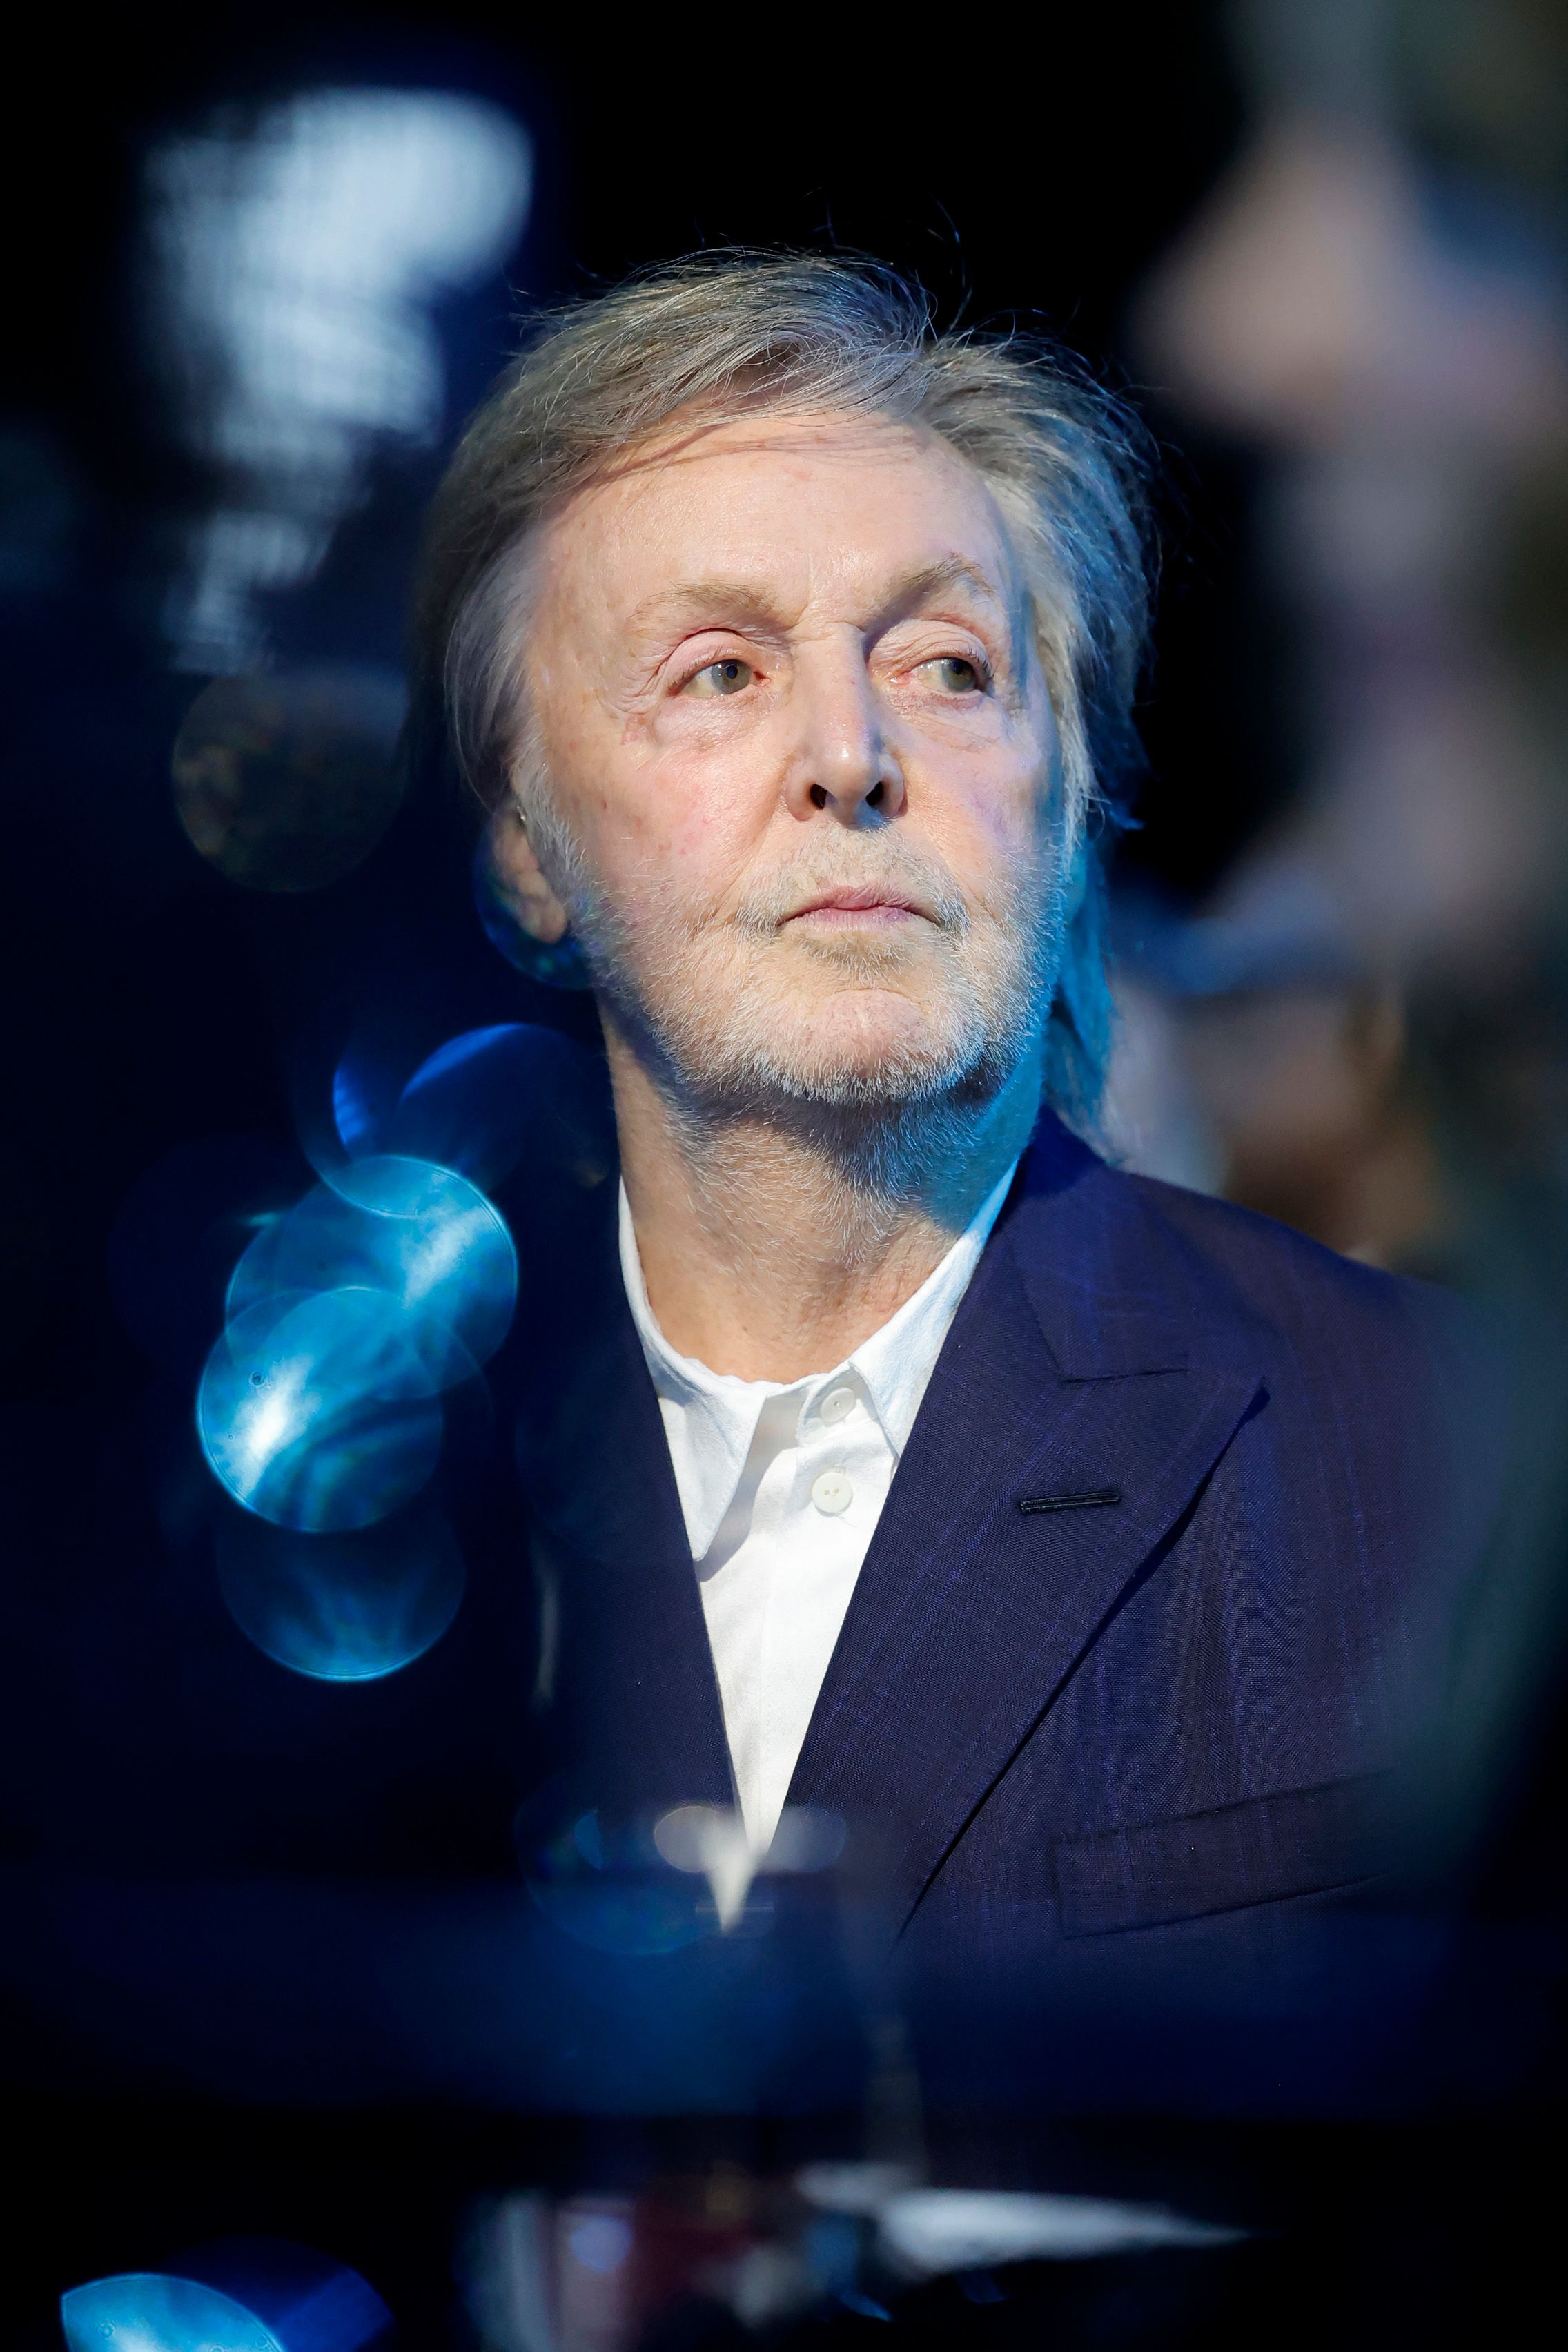 Paul McCartney entre dans le club des milliardaires